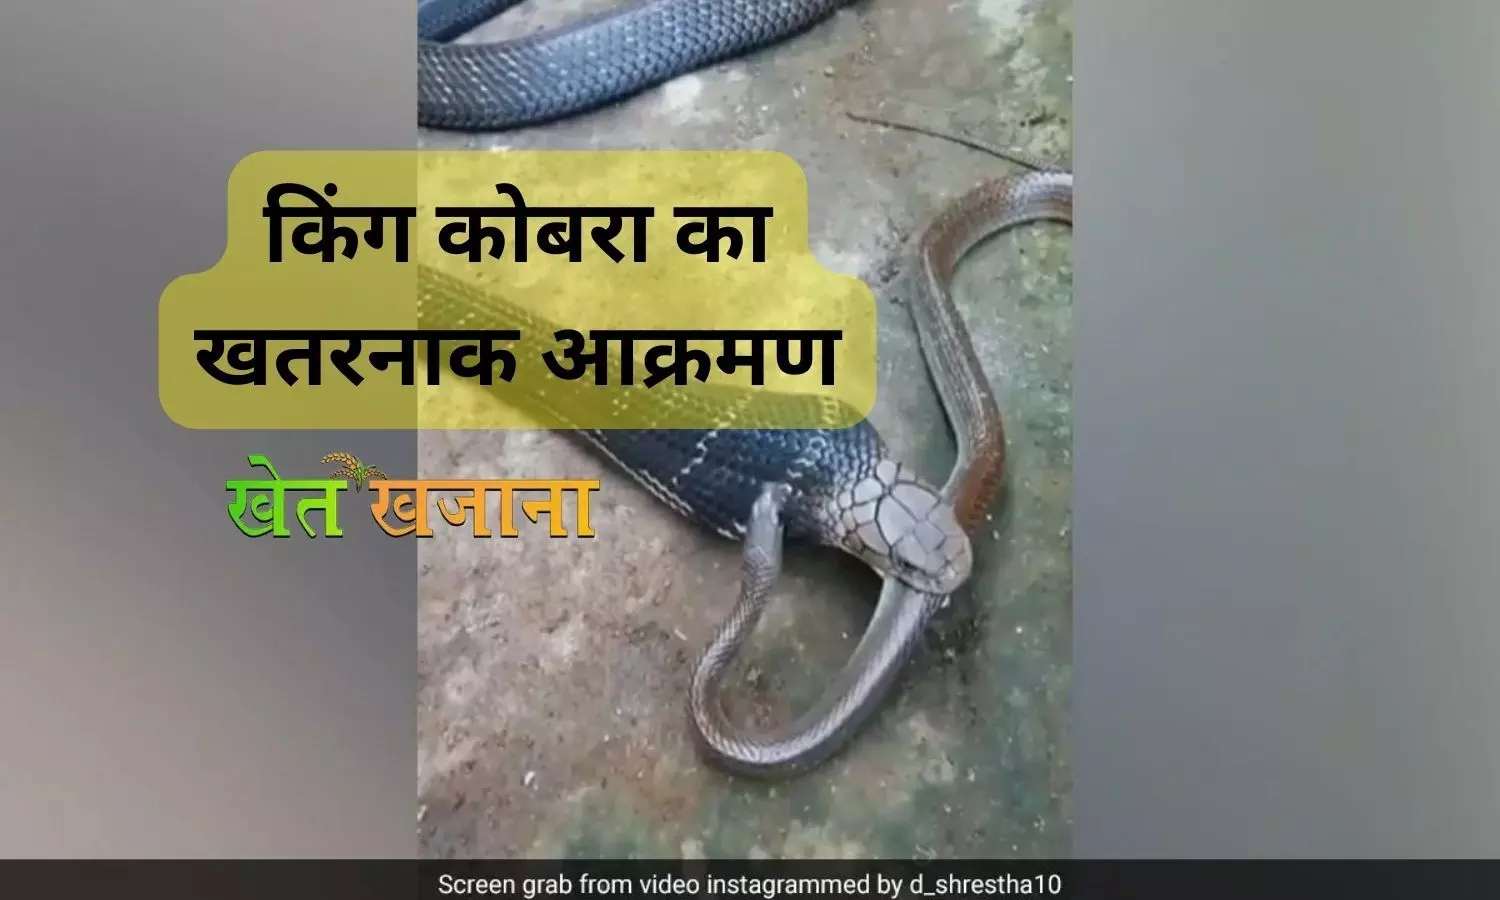 किंग कोबरा का खतरनाक आक्रमण: छोटे सांप को दबोचकर चबाया, देखिए वीडियो